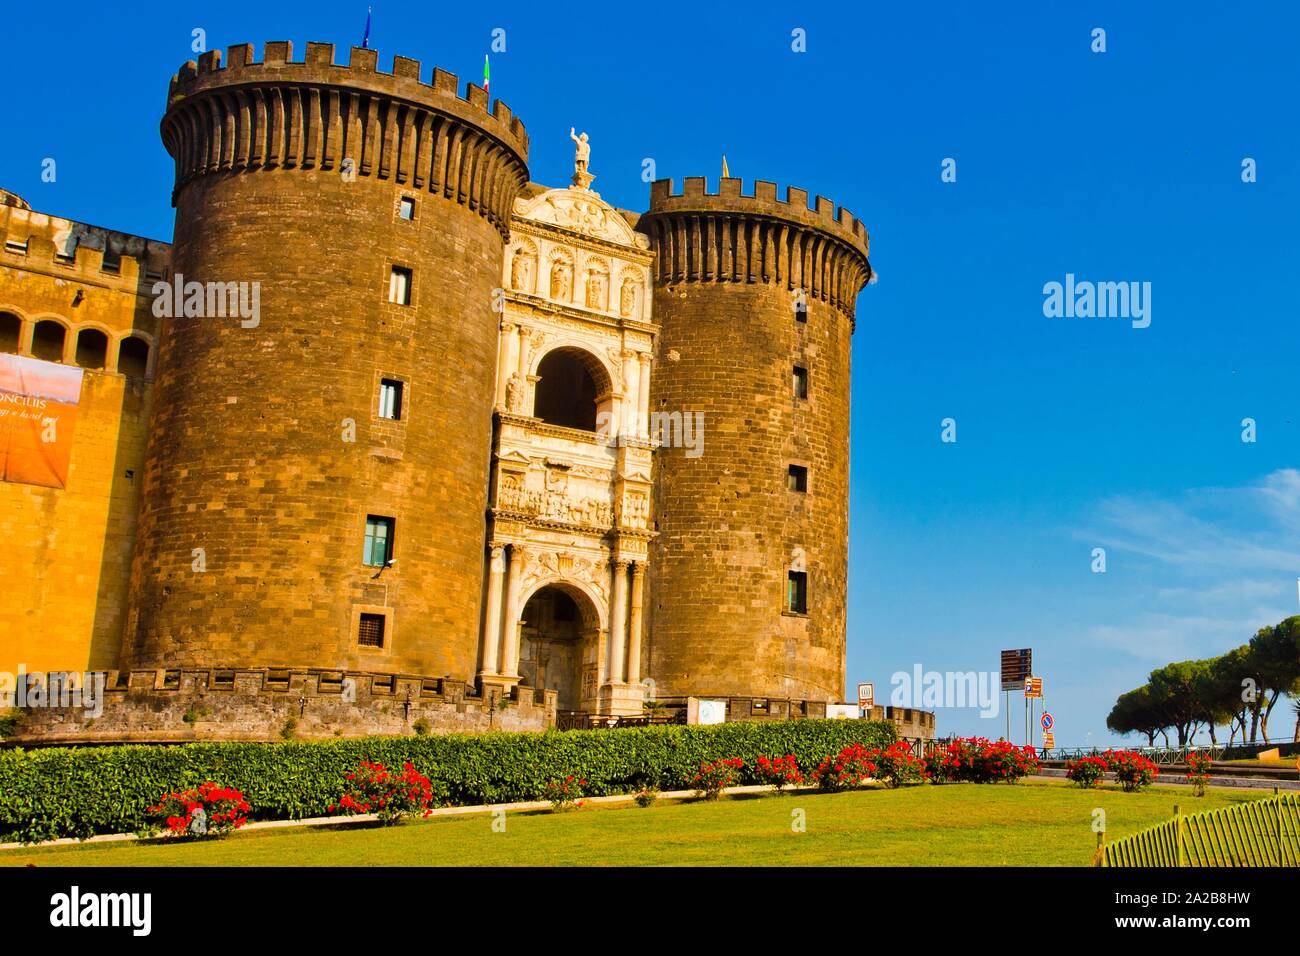 El Castel Nuovo, el castillo nuevo, llamado a menudo Maschio Angioino, Nápoles, Campania, Italia, Europa. Foto de stock